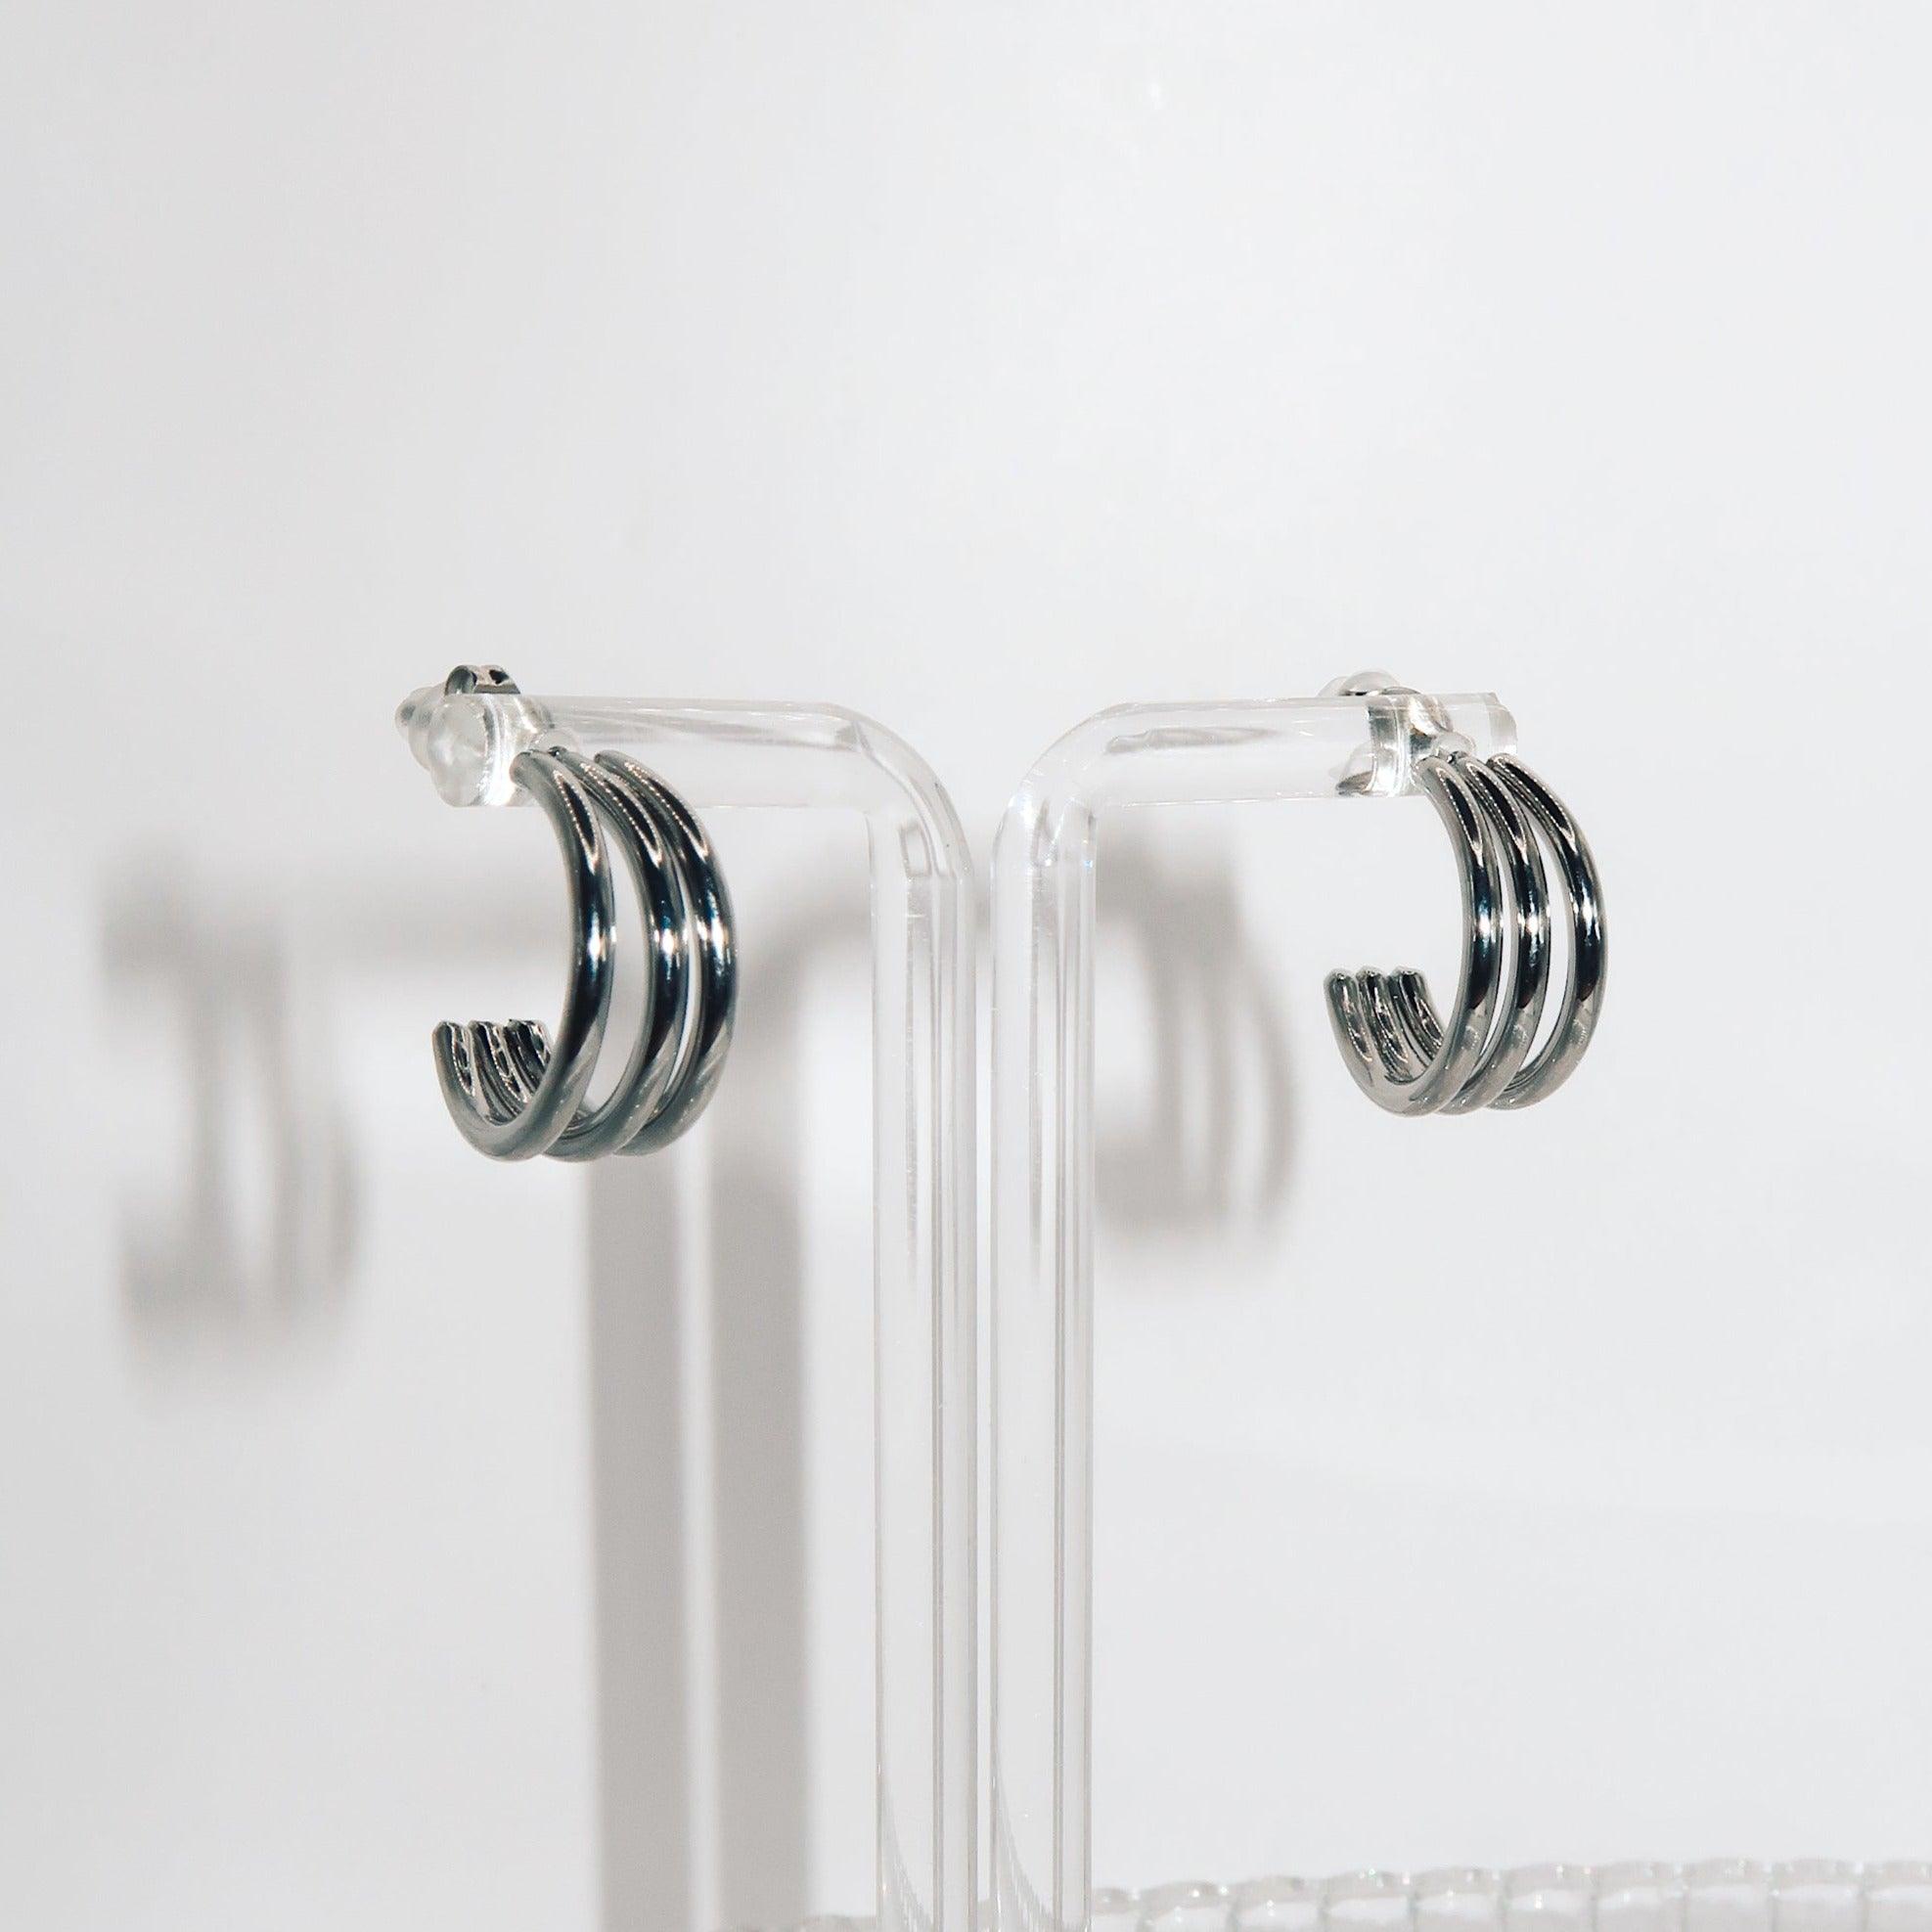 KARRIEN - 18K PVD Silver Plated Triple Loop Earrings - Mixed Metals